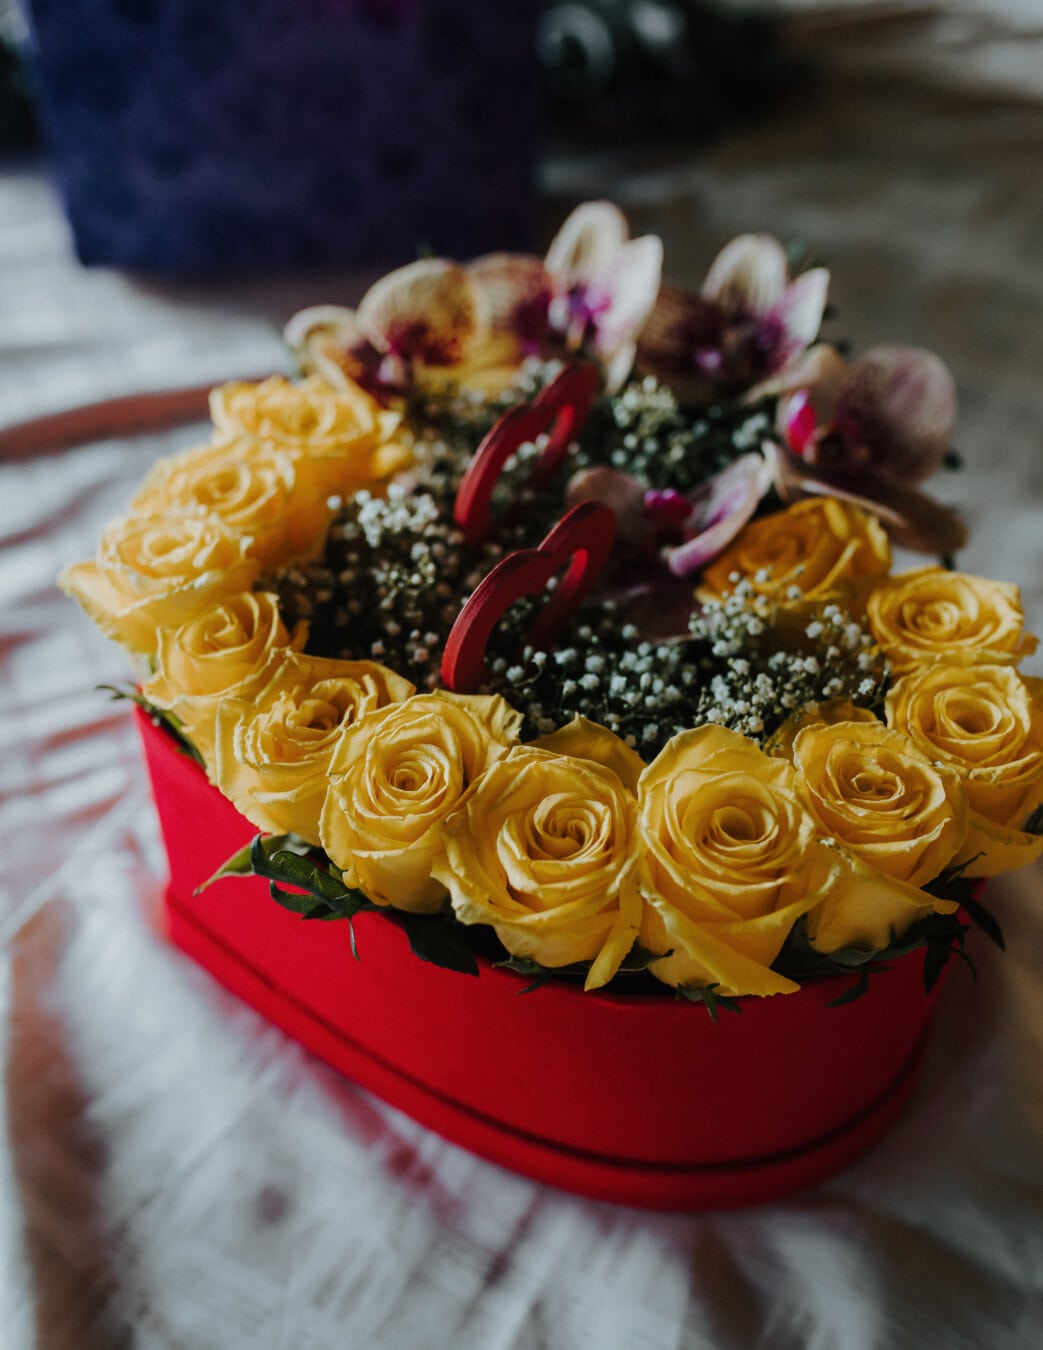 La Saint-Valentin, cadeau, bouquet, romantique, amour, coeur, des roses, fleur, décoration, fleurs